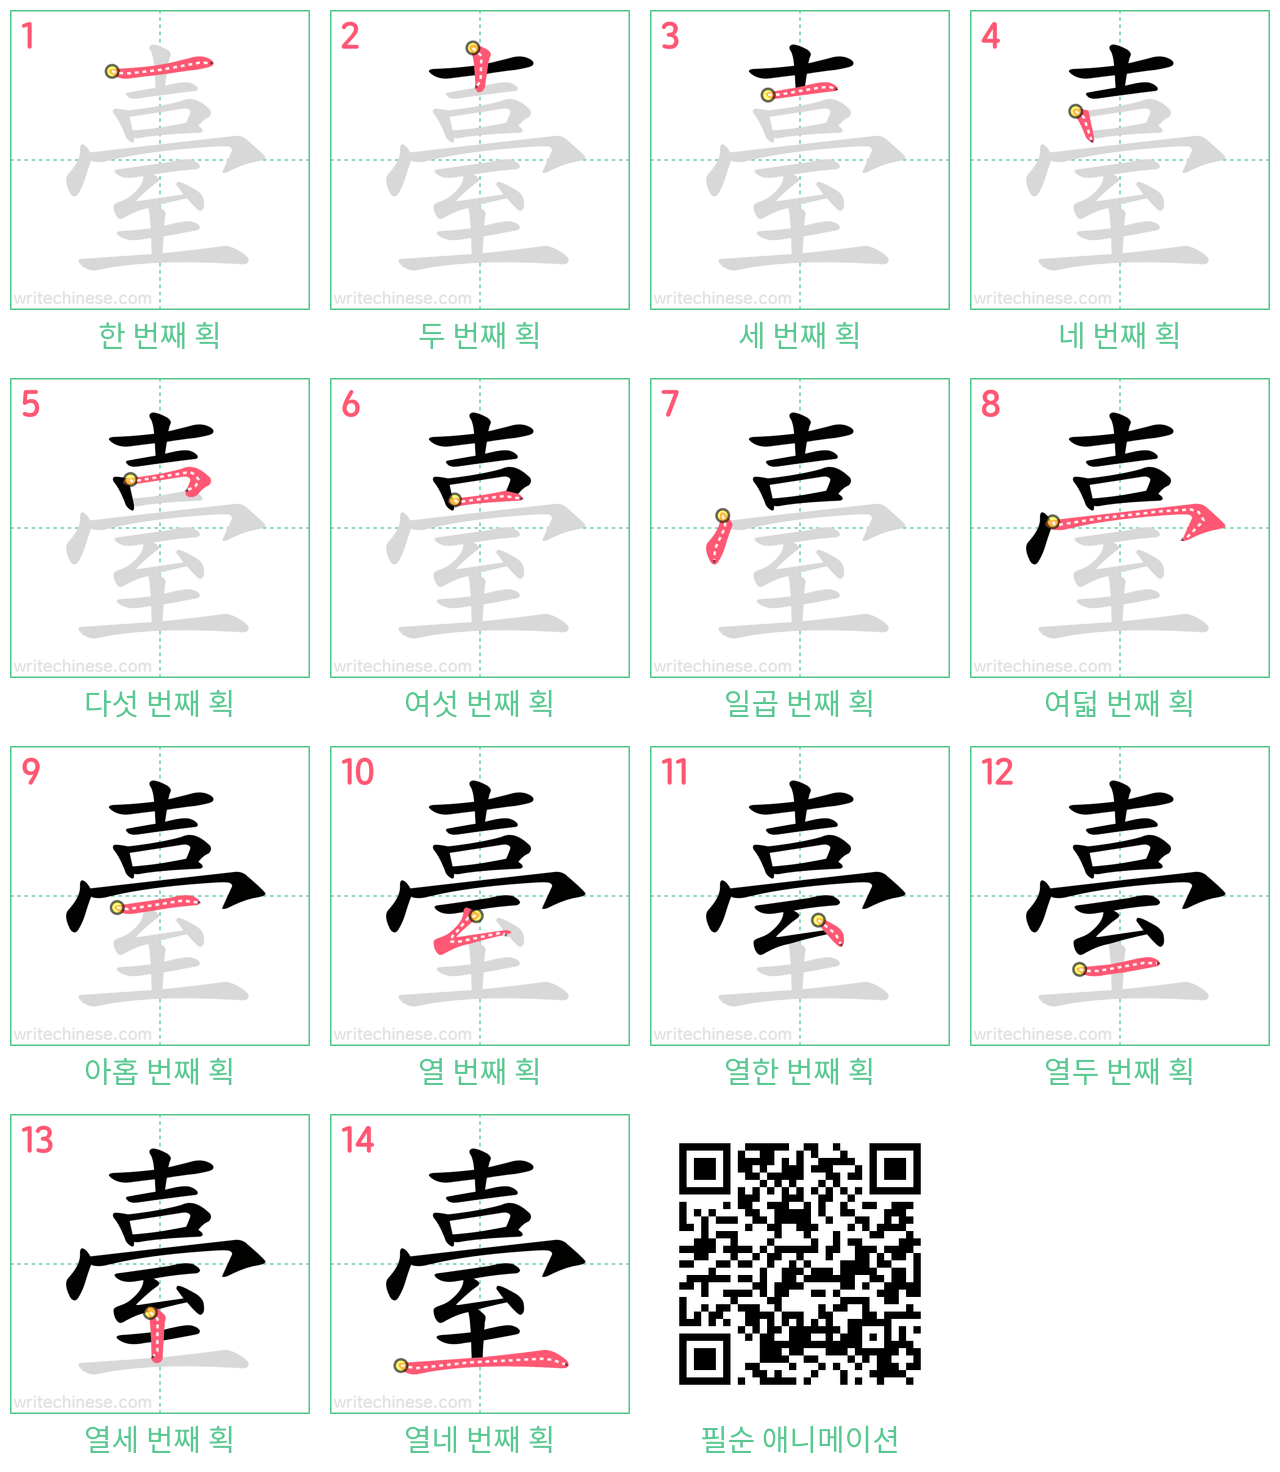 臺 step-by-step stroke order diagrams